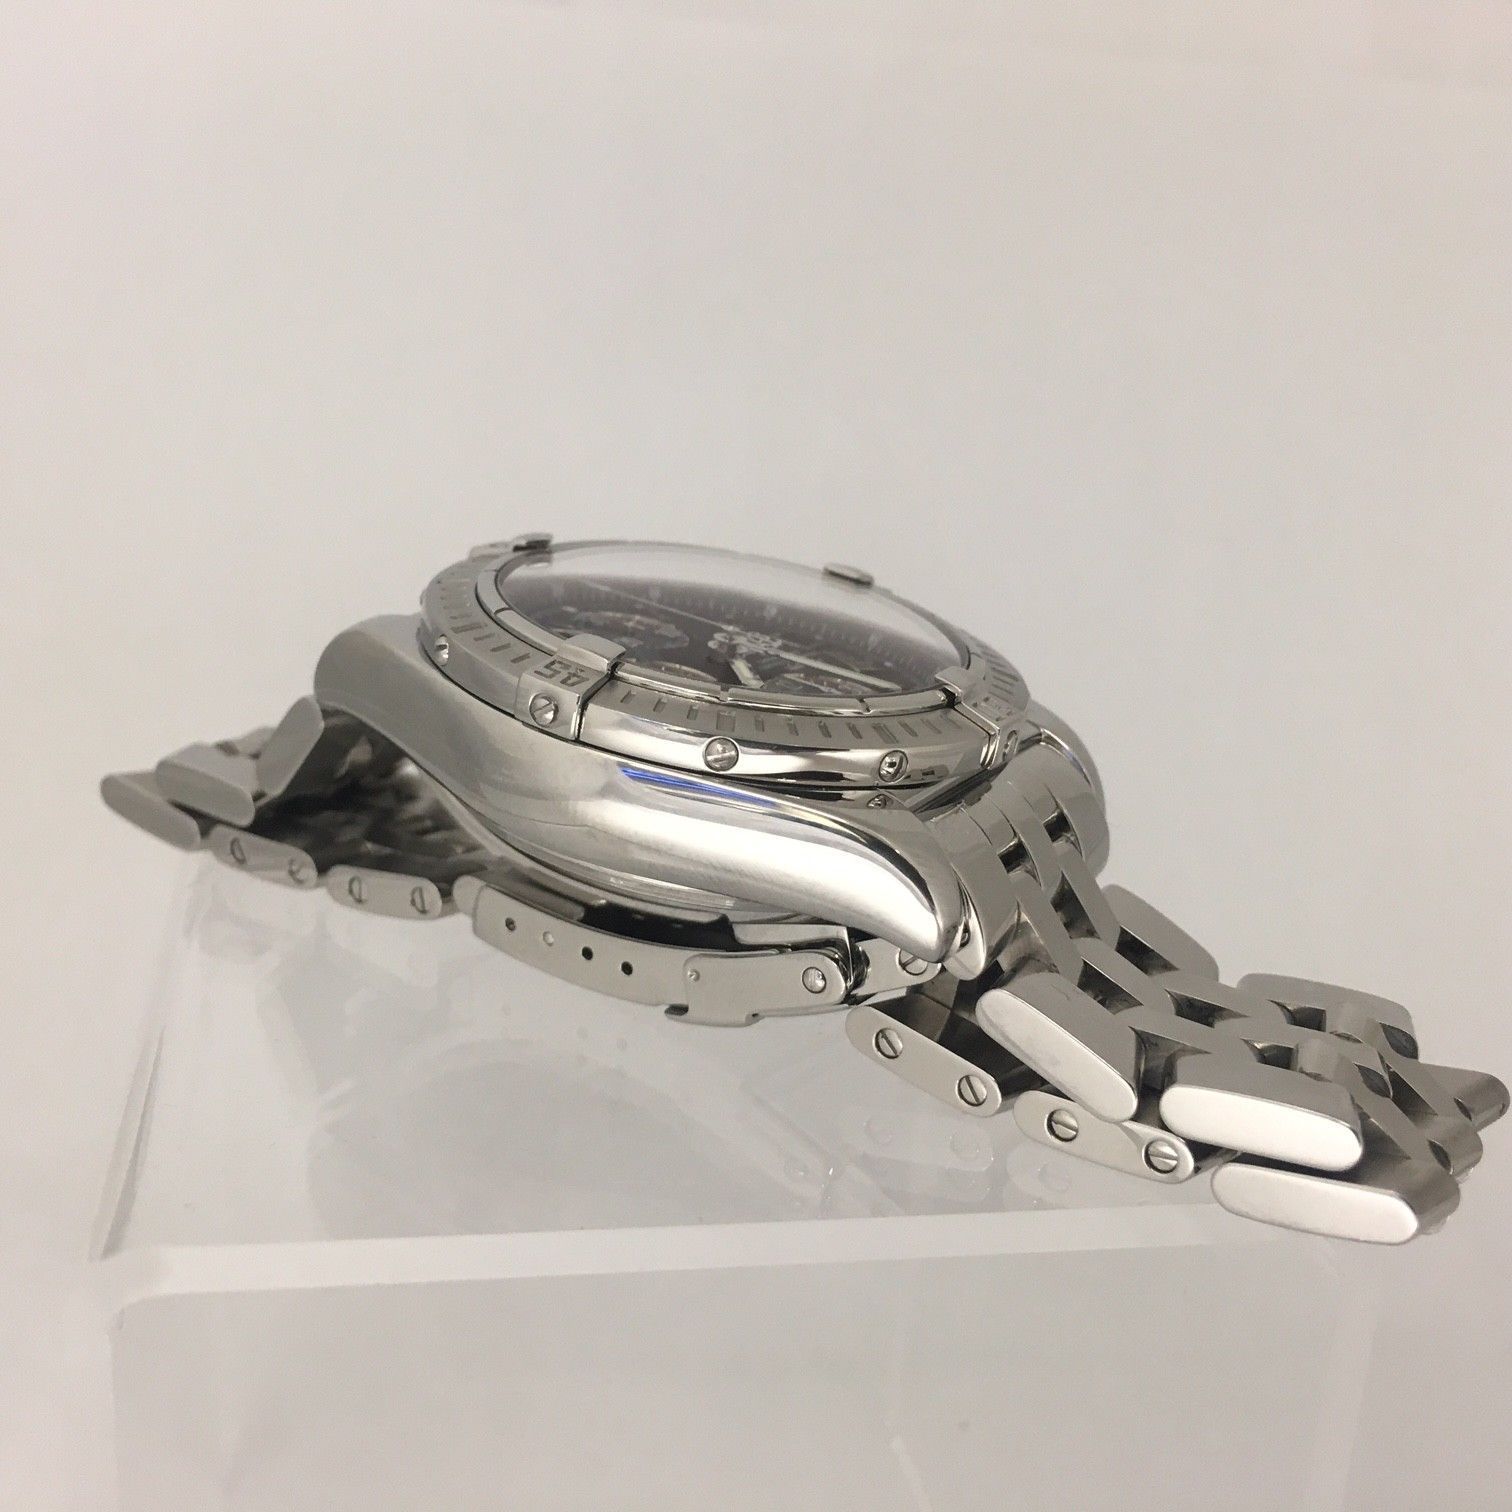 Breitling Chronomat Evolution A13356 Montre-bracelet automatique pour homme